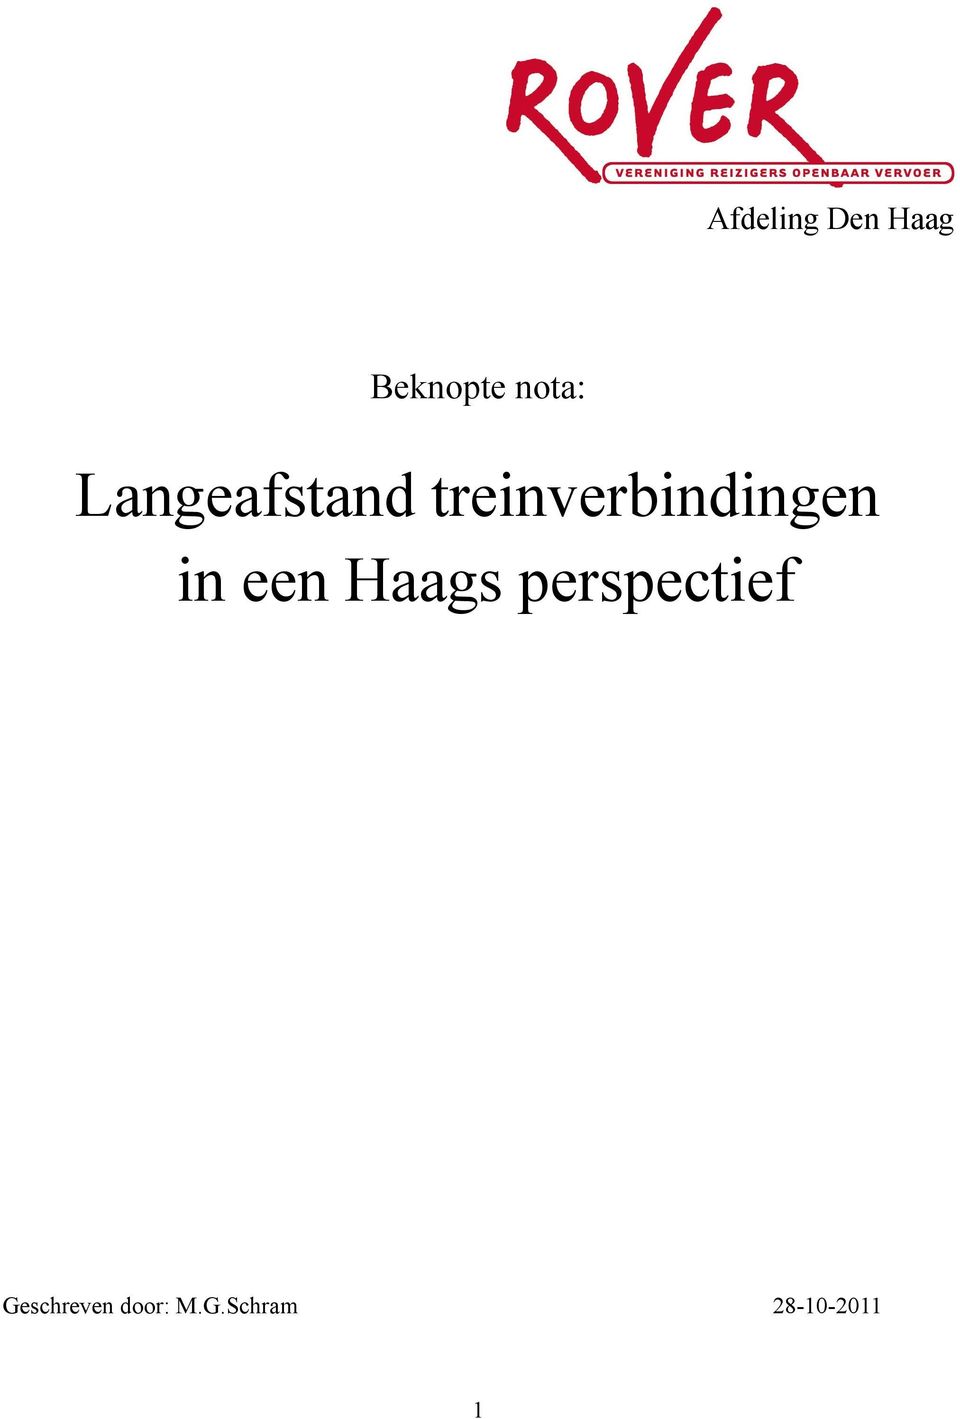 in een Haags perspectief